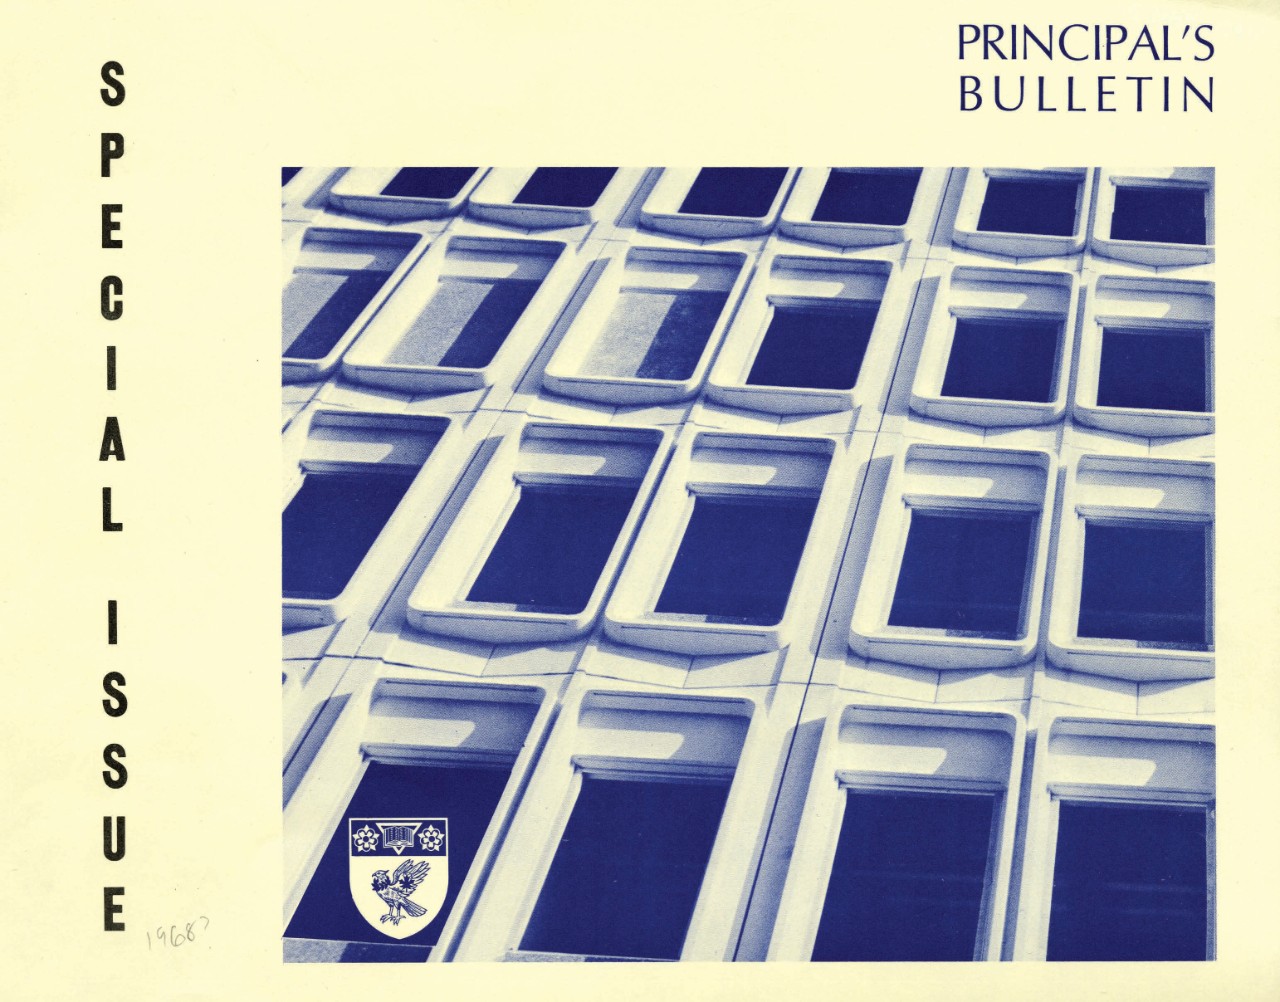 Postgrad, Summer 1966 - The Building Issue